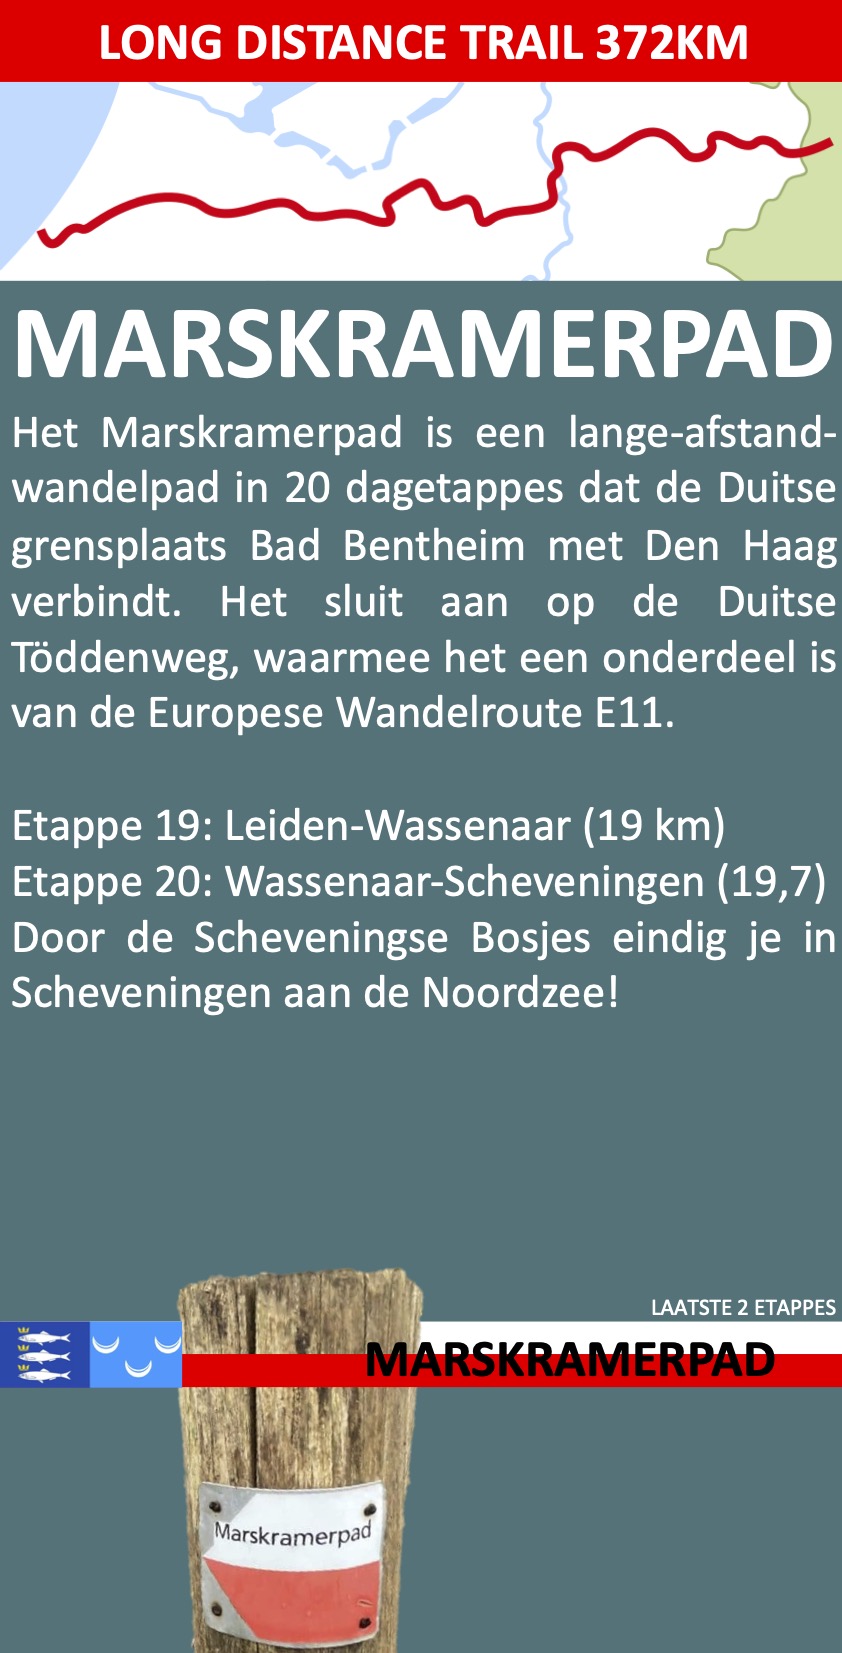 Het Marskramerpad (LAW 3) is een lange-afstand-wandelpad of LAW dat de Duitse grensplaats Bad Bentheim met Den Haag verbindt over een lengte van 372 kilometer. Het pad wordt beheerd door Wandelnet. De Hanzeweg van de NWB is in het Marskramerpad opgenomen. Het pad sluit aan op de Duitse wandelroute Töddenweg, waarmee het de Handelsweg vormt en onderdeel is van de Europese Wandelroute E11.